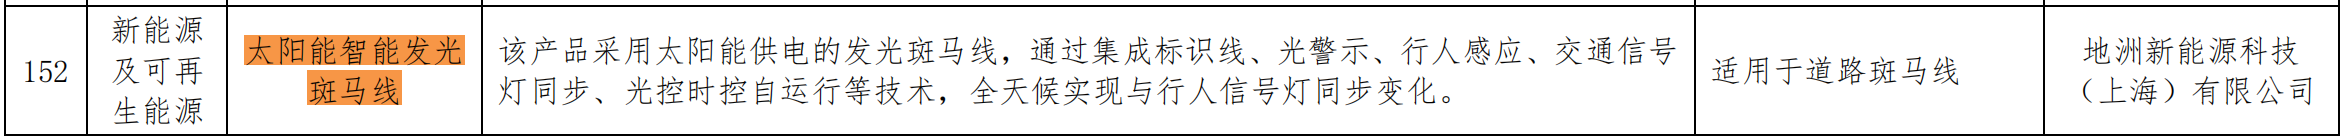 关于发布北京市节能技术产品推荐目录（2020年本）的通知 （京发改〔2020〕1889号）20201228